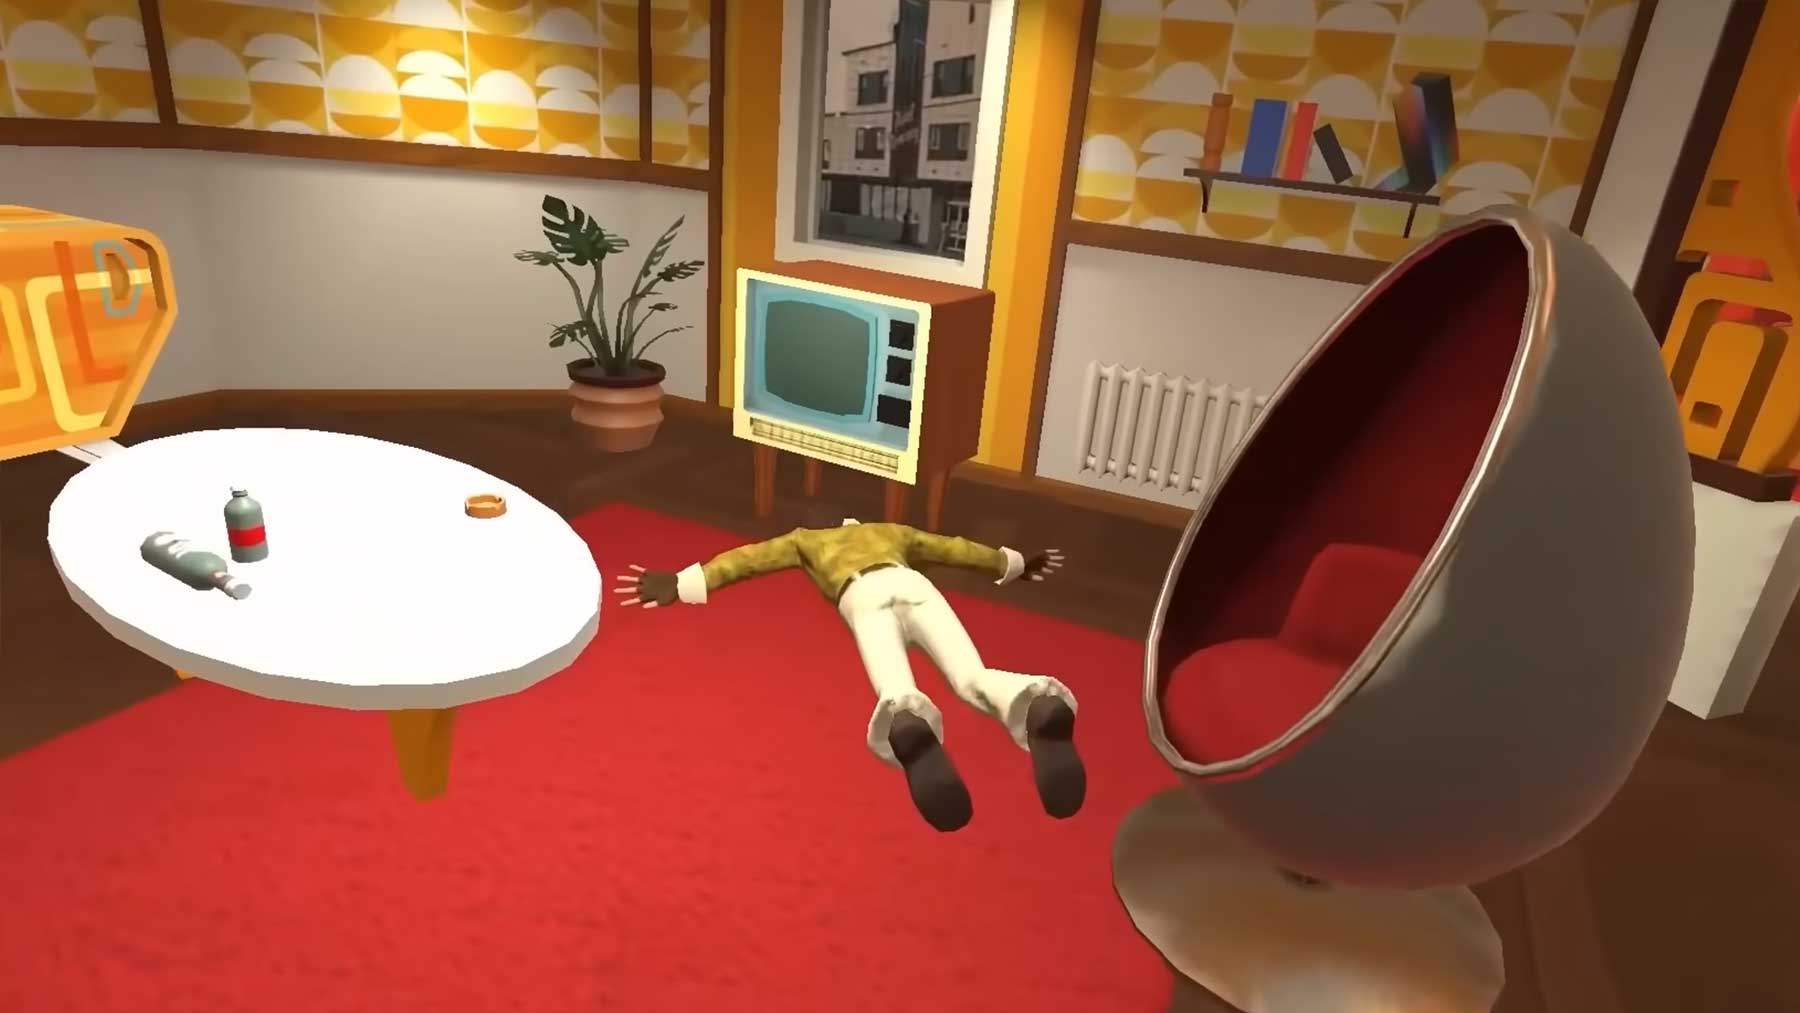 In diesem Videospiel muss man eine Leiche verschwinden lassen hide-the-corpse-videospiel-leiche-verschwinden-lassen 